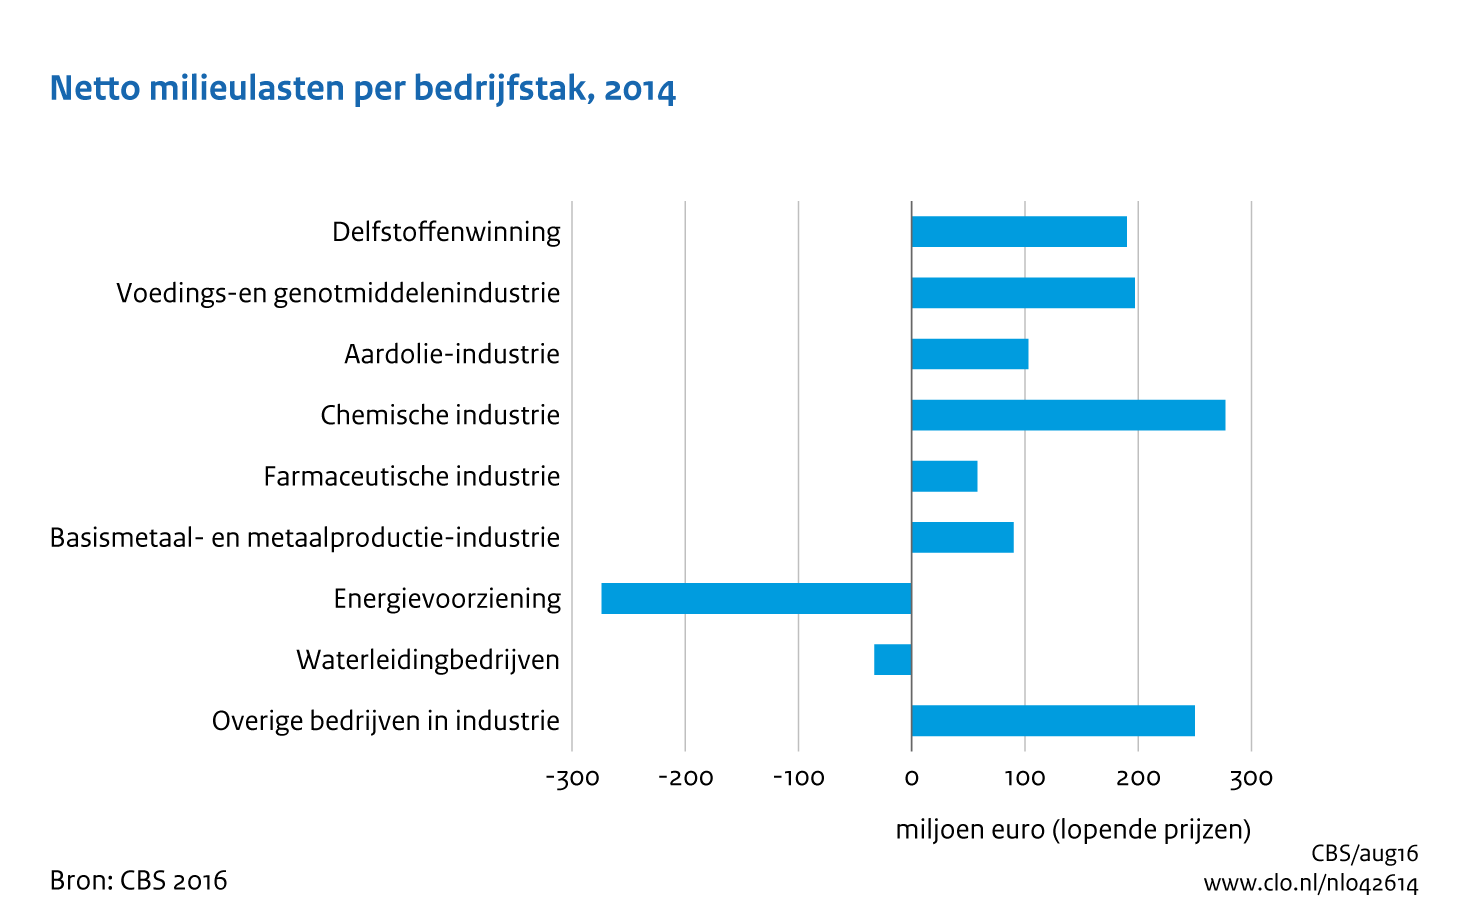 Figuur netto milieulasten naar bedrijfstak 2014. In de rest van de tekst wordt deze figuur uitgebreider uitgelegd.